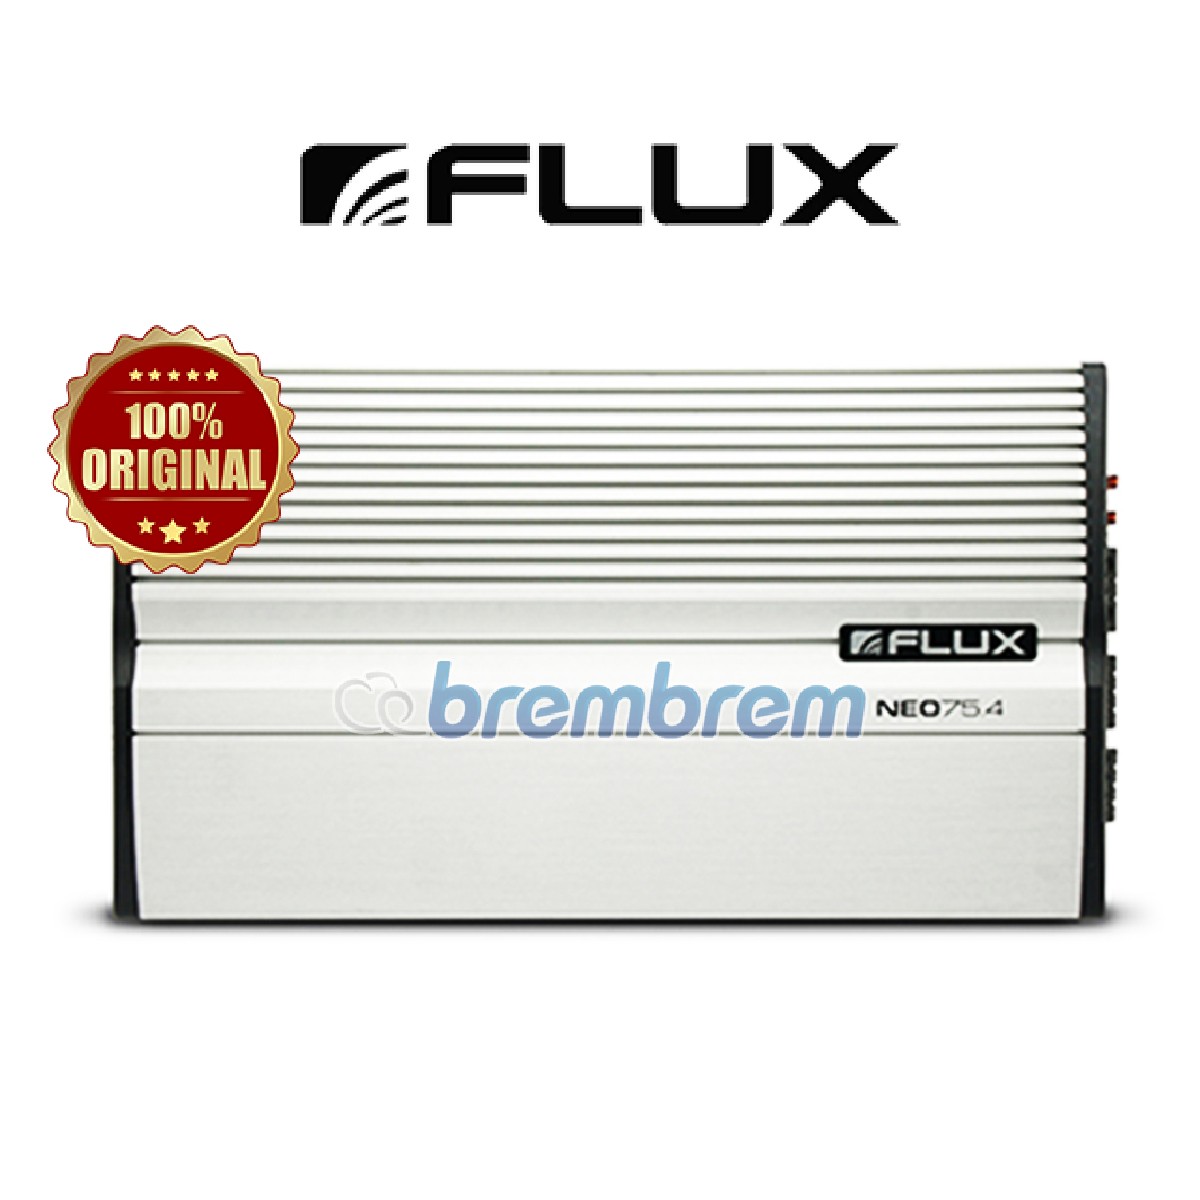 FLUX NEO 75.4 - POWER 4 CHANNEL